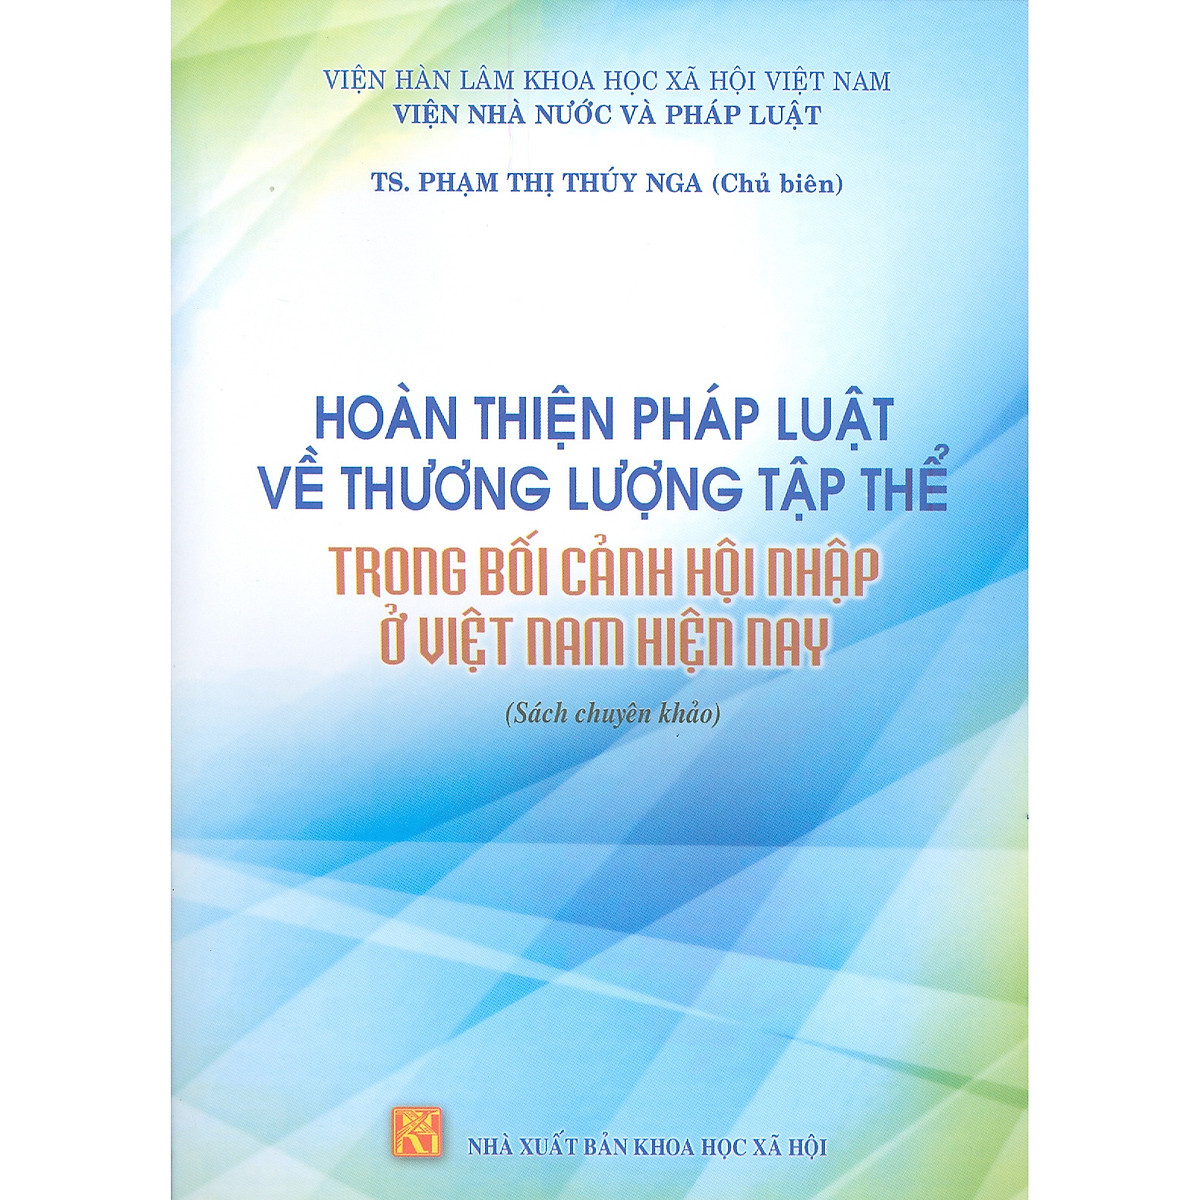 Hoàn Thiện Pháp Luật Về Thương Lượng Tập Thể Trong Bối Cảnh Hội Nhập Ở Việt Nam Hiện Nay (Sách Chuyên Khảo)